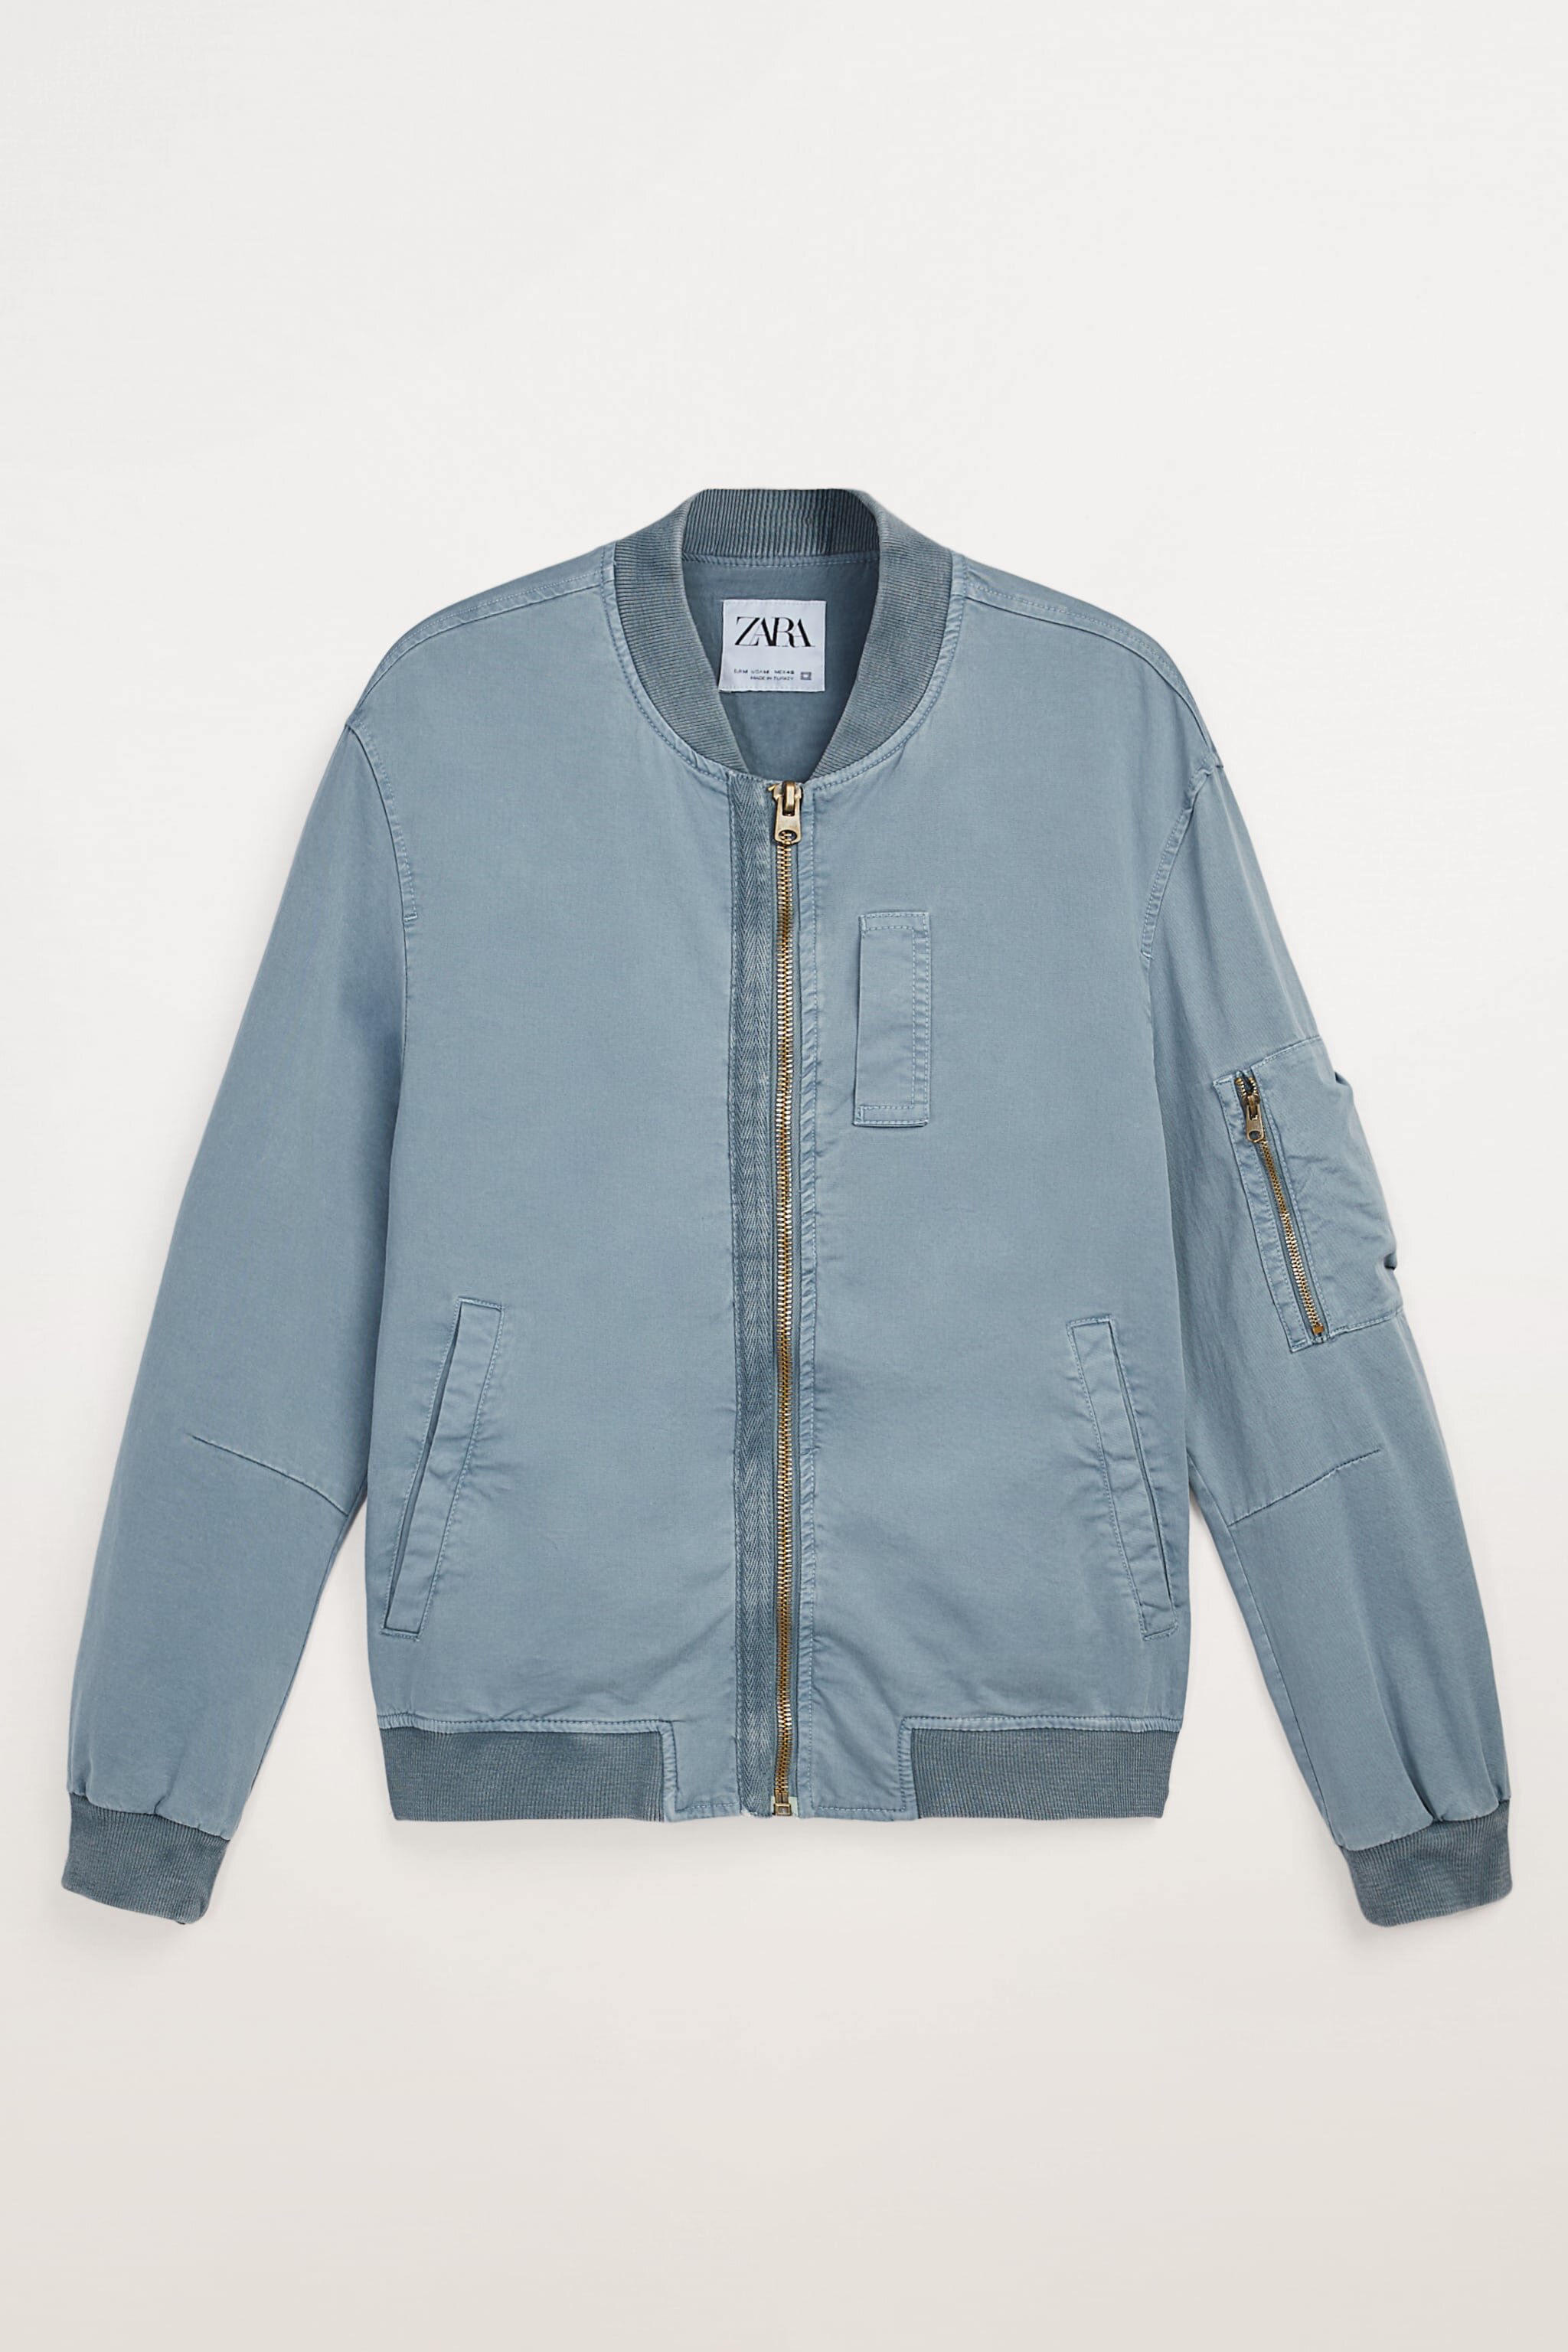 Cotton Bomber Jacket, ₱2,295